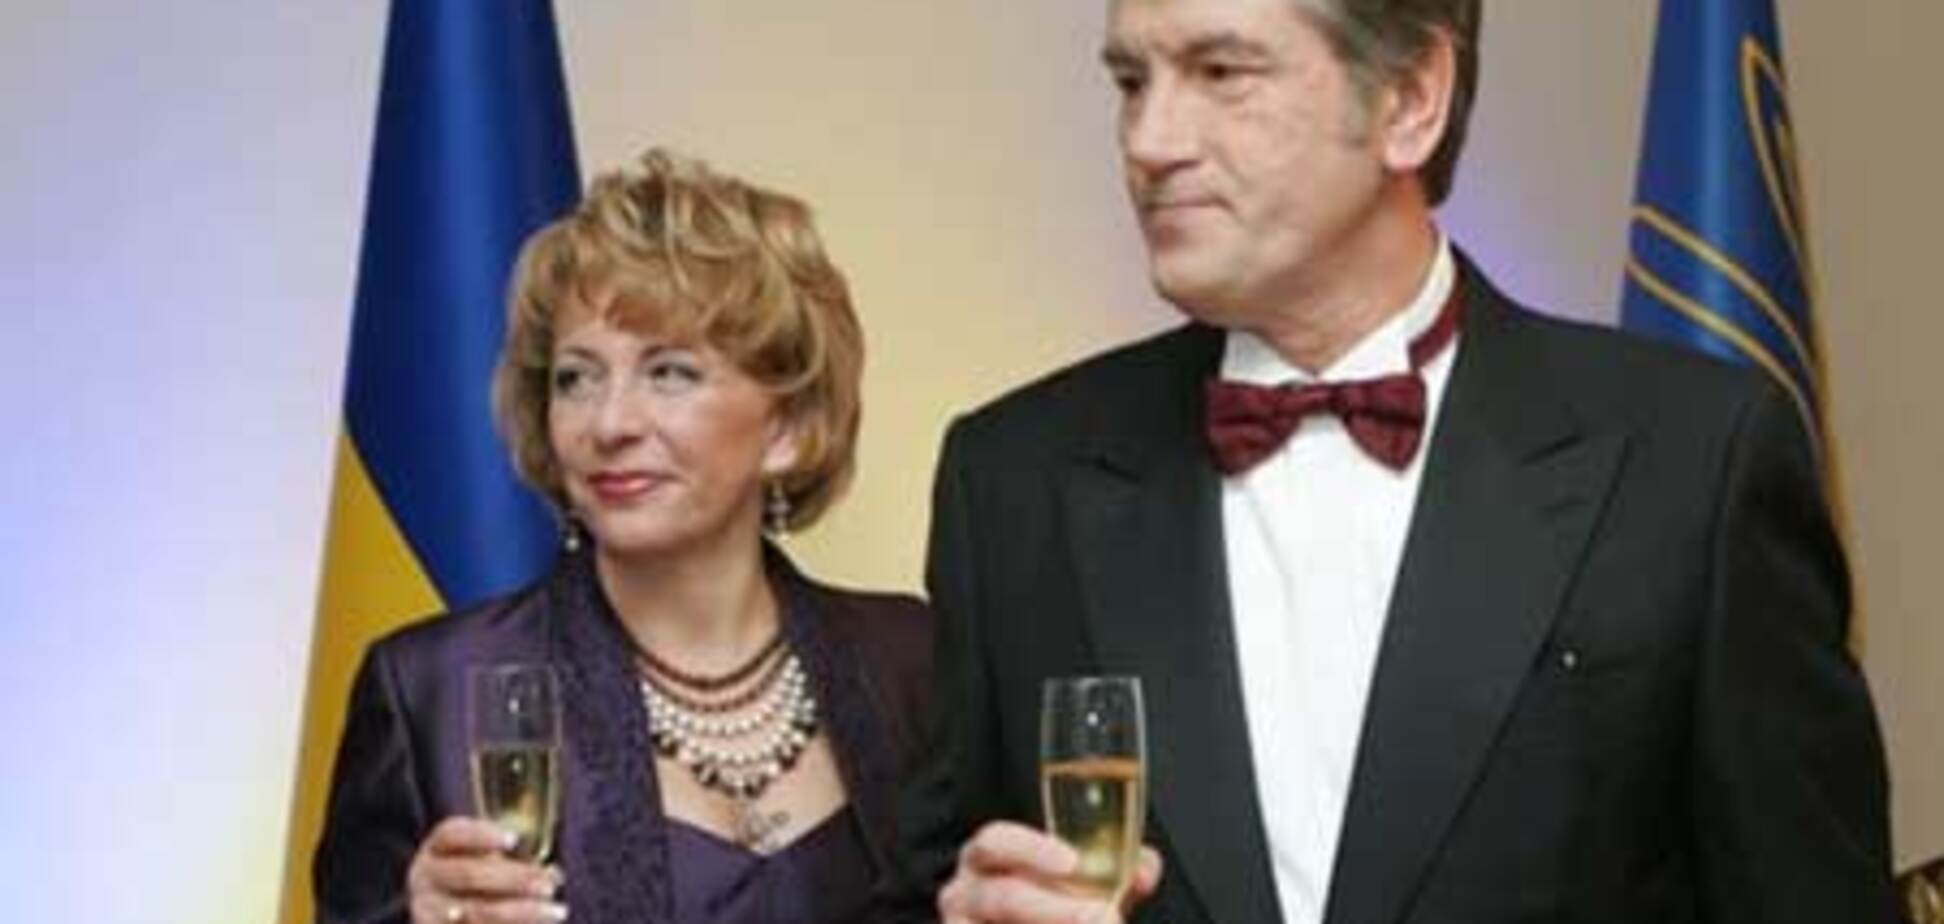 Ющенко отпразднует день рождения в «Президент-отеле»